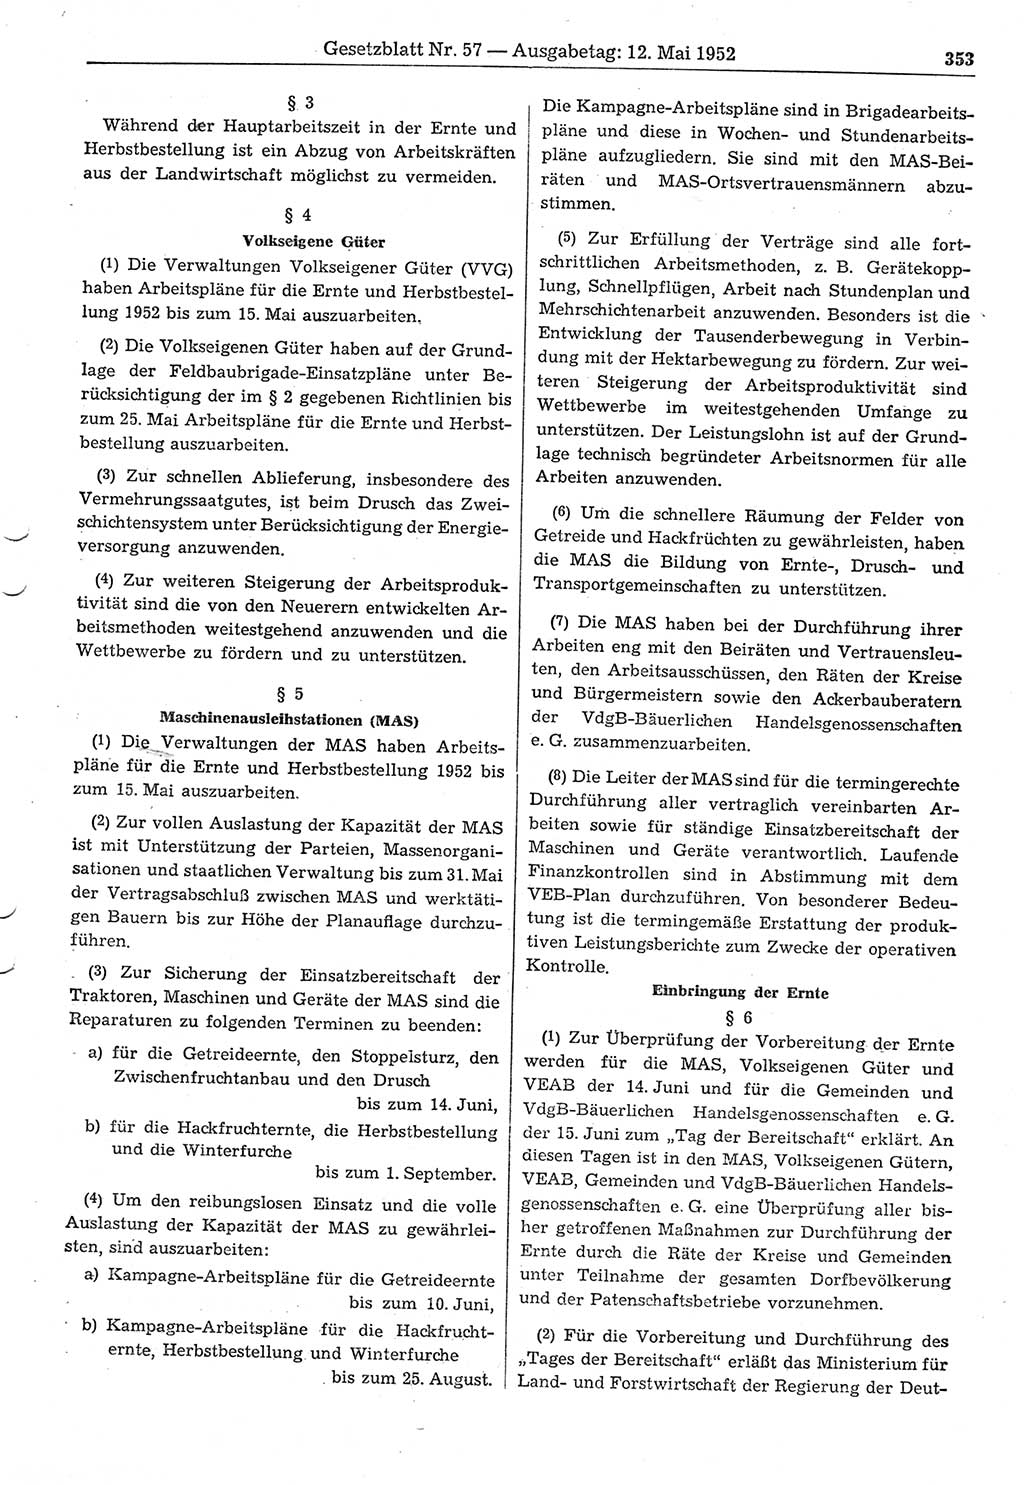 Gesetzblatt (GBl.) der Deutschen Demokratischen Republik (DDR) 1952, Seite 353 (GBl. DDR 1952, S. 353)